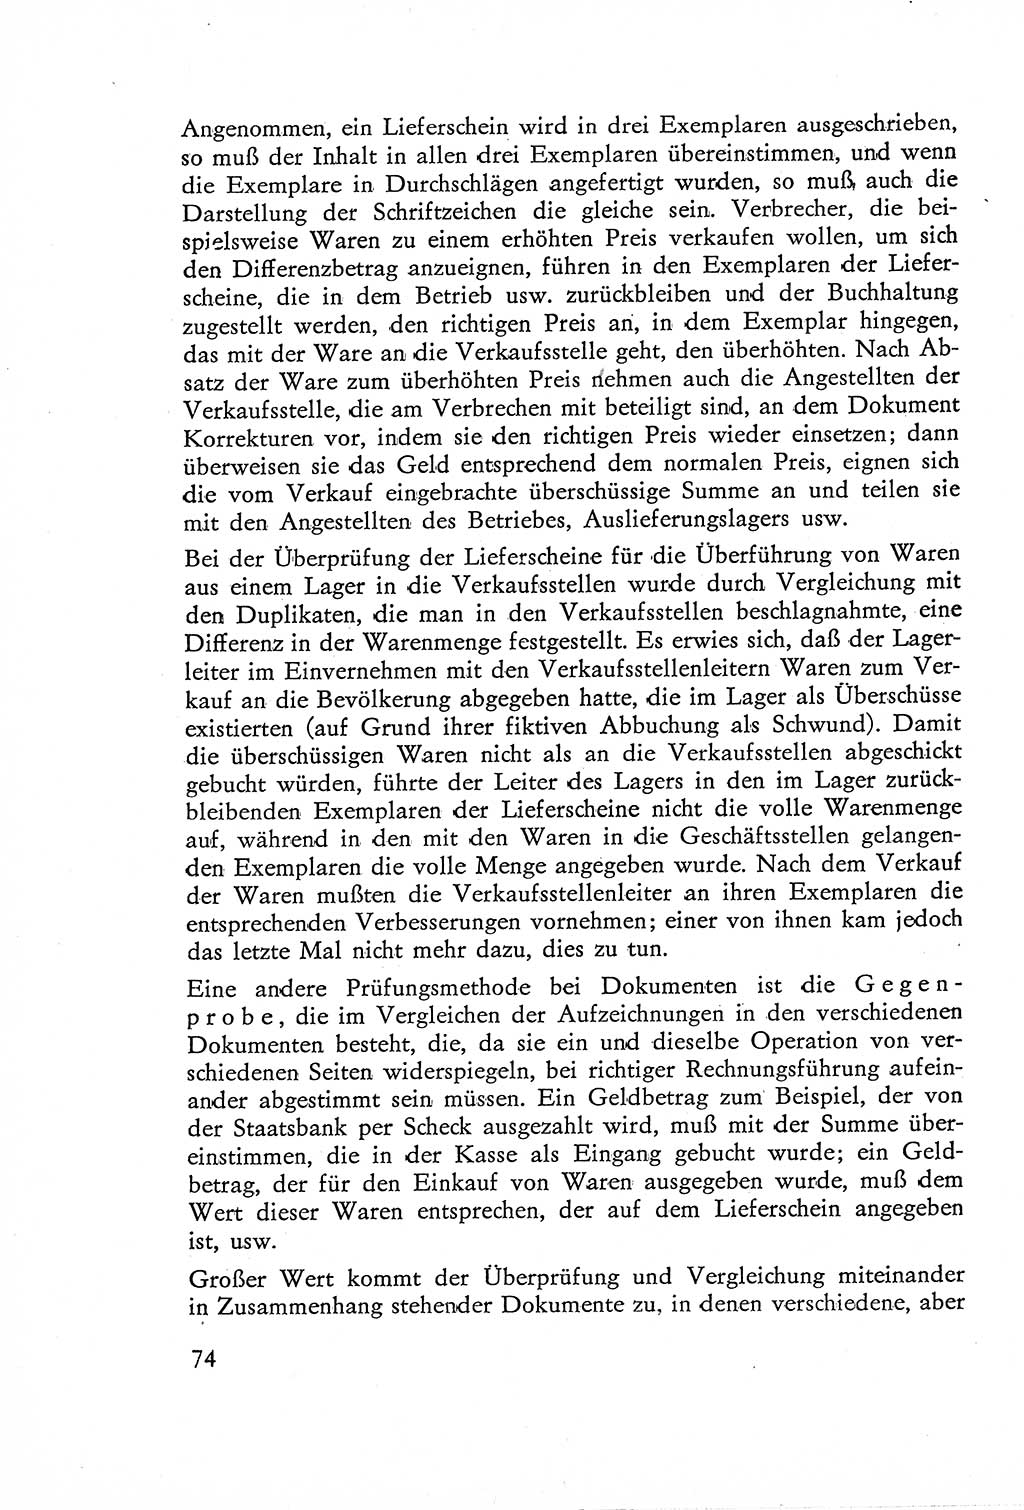 Die Untersuchung einzelner Verbrechensarten [Deutsche Demokratische Republik (DDR)] 1960, Seite 74 (Unters. Verbr.-Art. DDR 1960, S. 74)